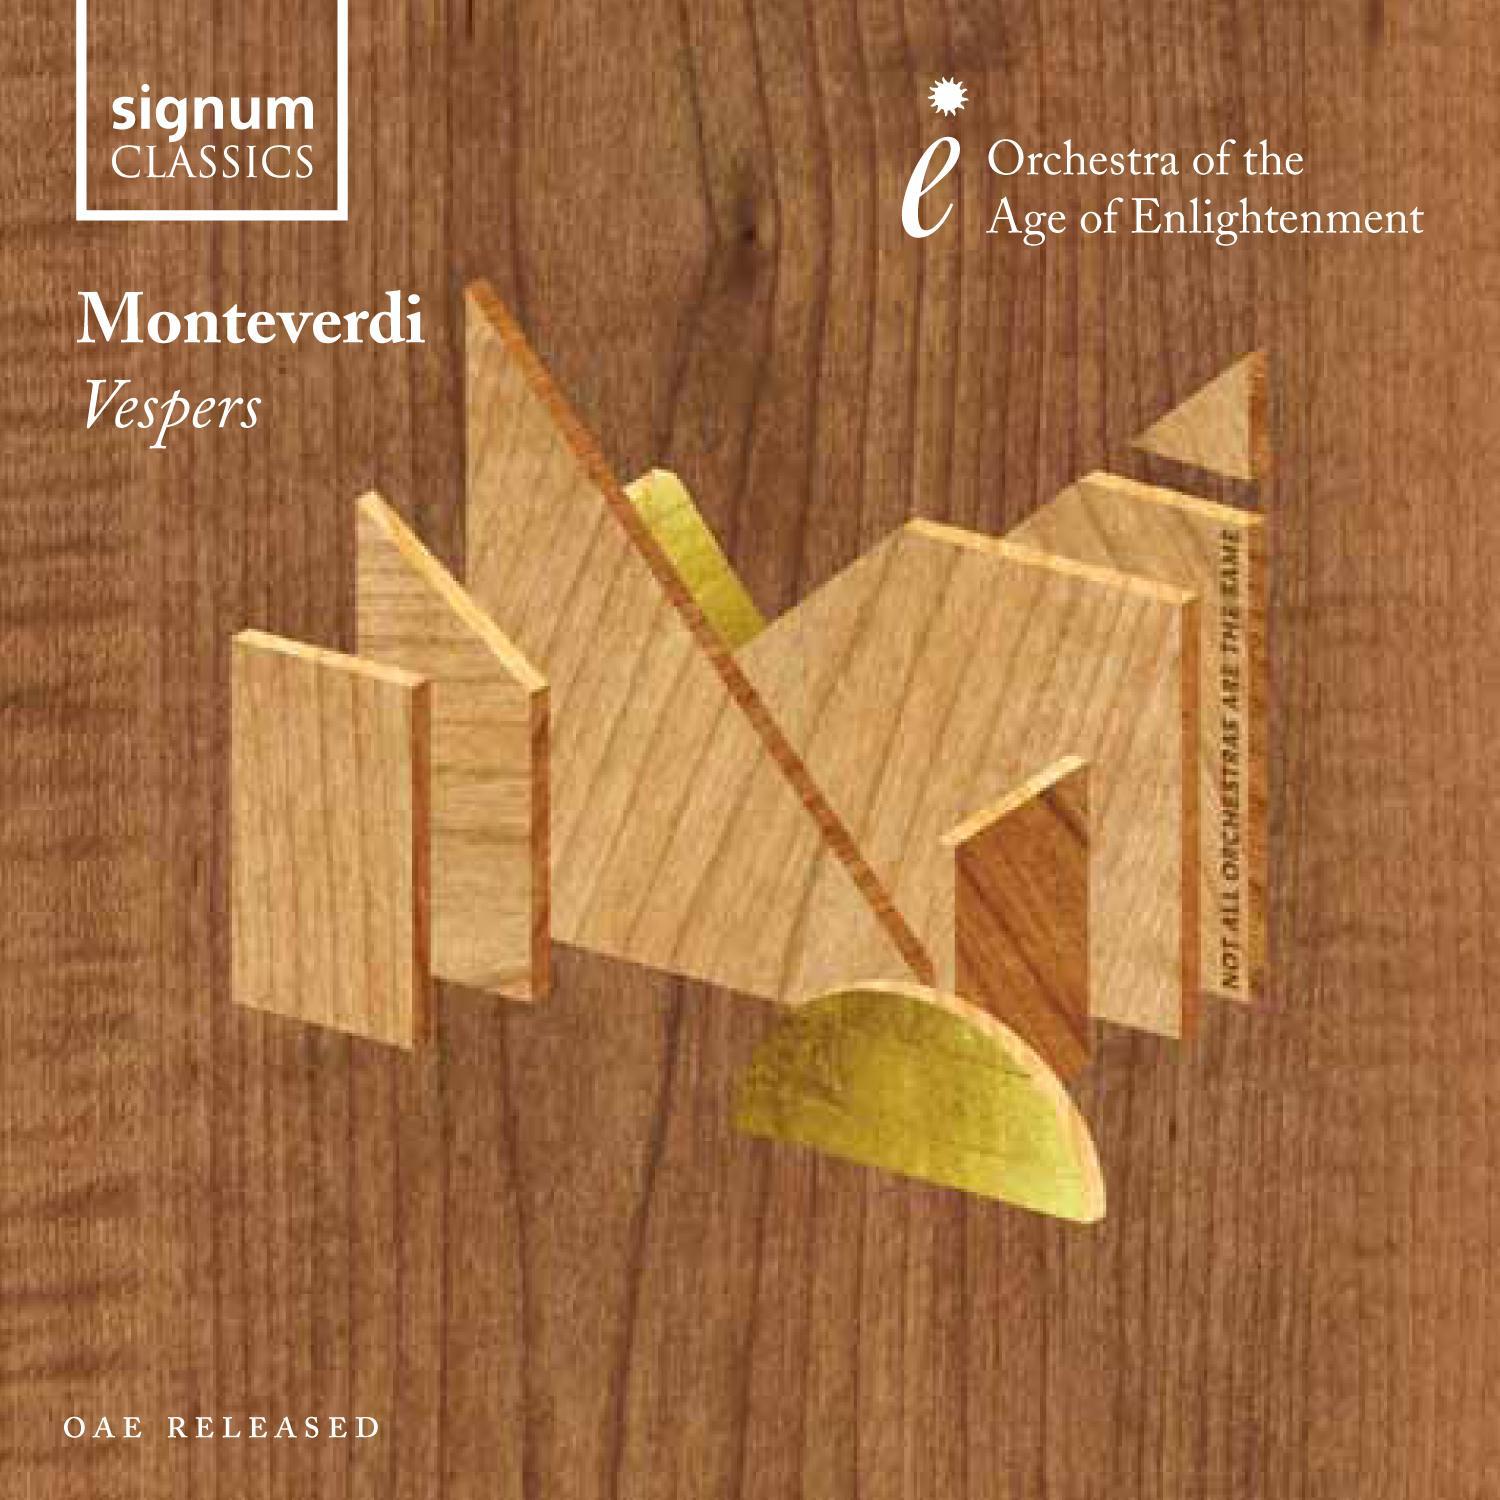 Claudio Monteverdi - Versicle/Response: Deus in adjutorium/Domine in adiuvandum